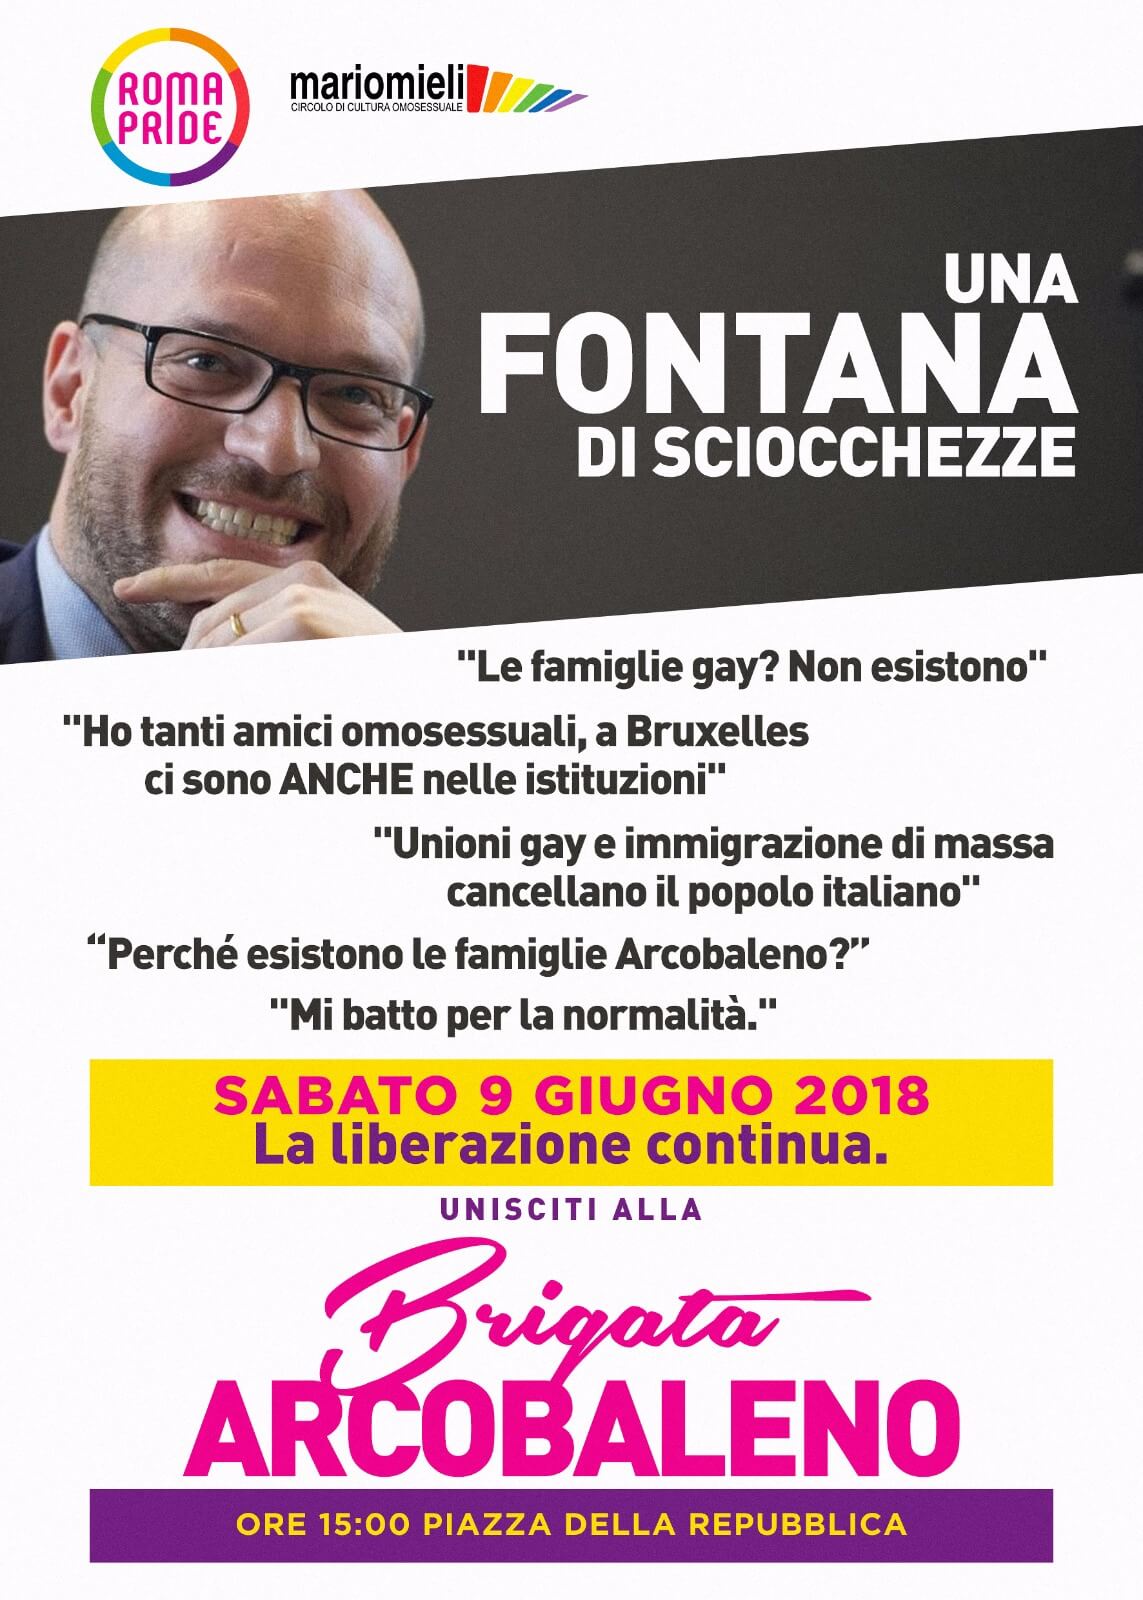 Michela Vittoria Brambilla contro Lorenzo Fontana: 'la famiglia è dove c'è amore e si crescono i figli' - FONTANA DI SCIOCCHEZZE - Gay.it